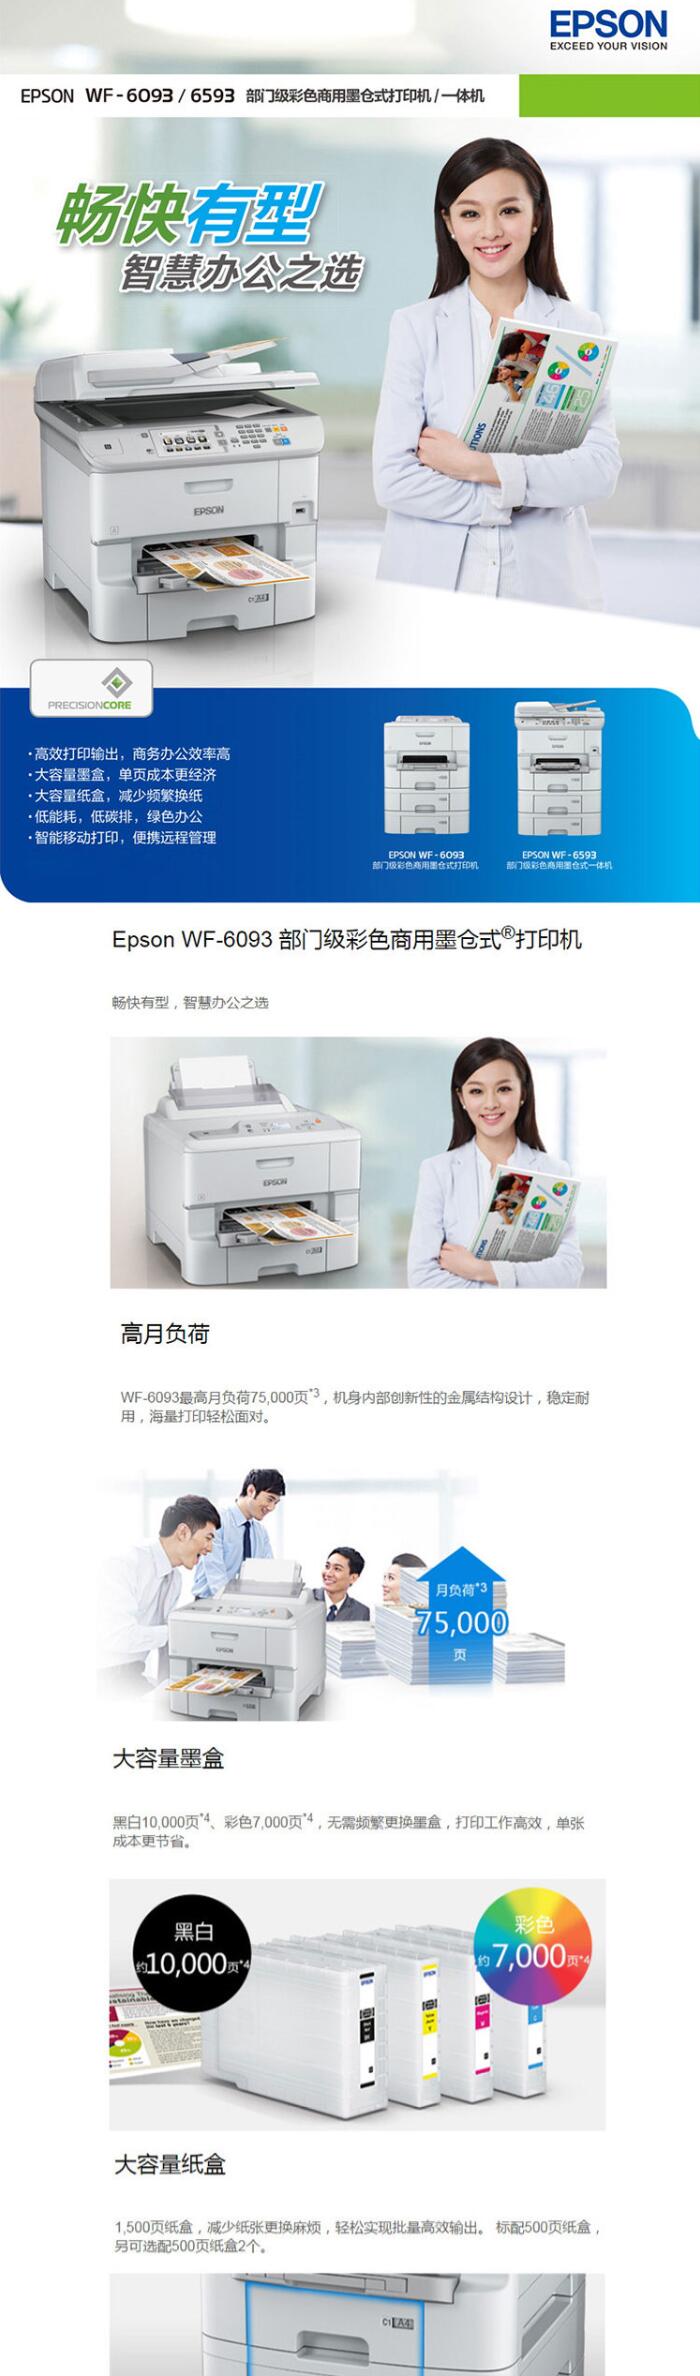 爱普生/Epson WF-6093 喷墨打印机(3)